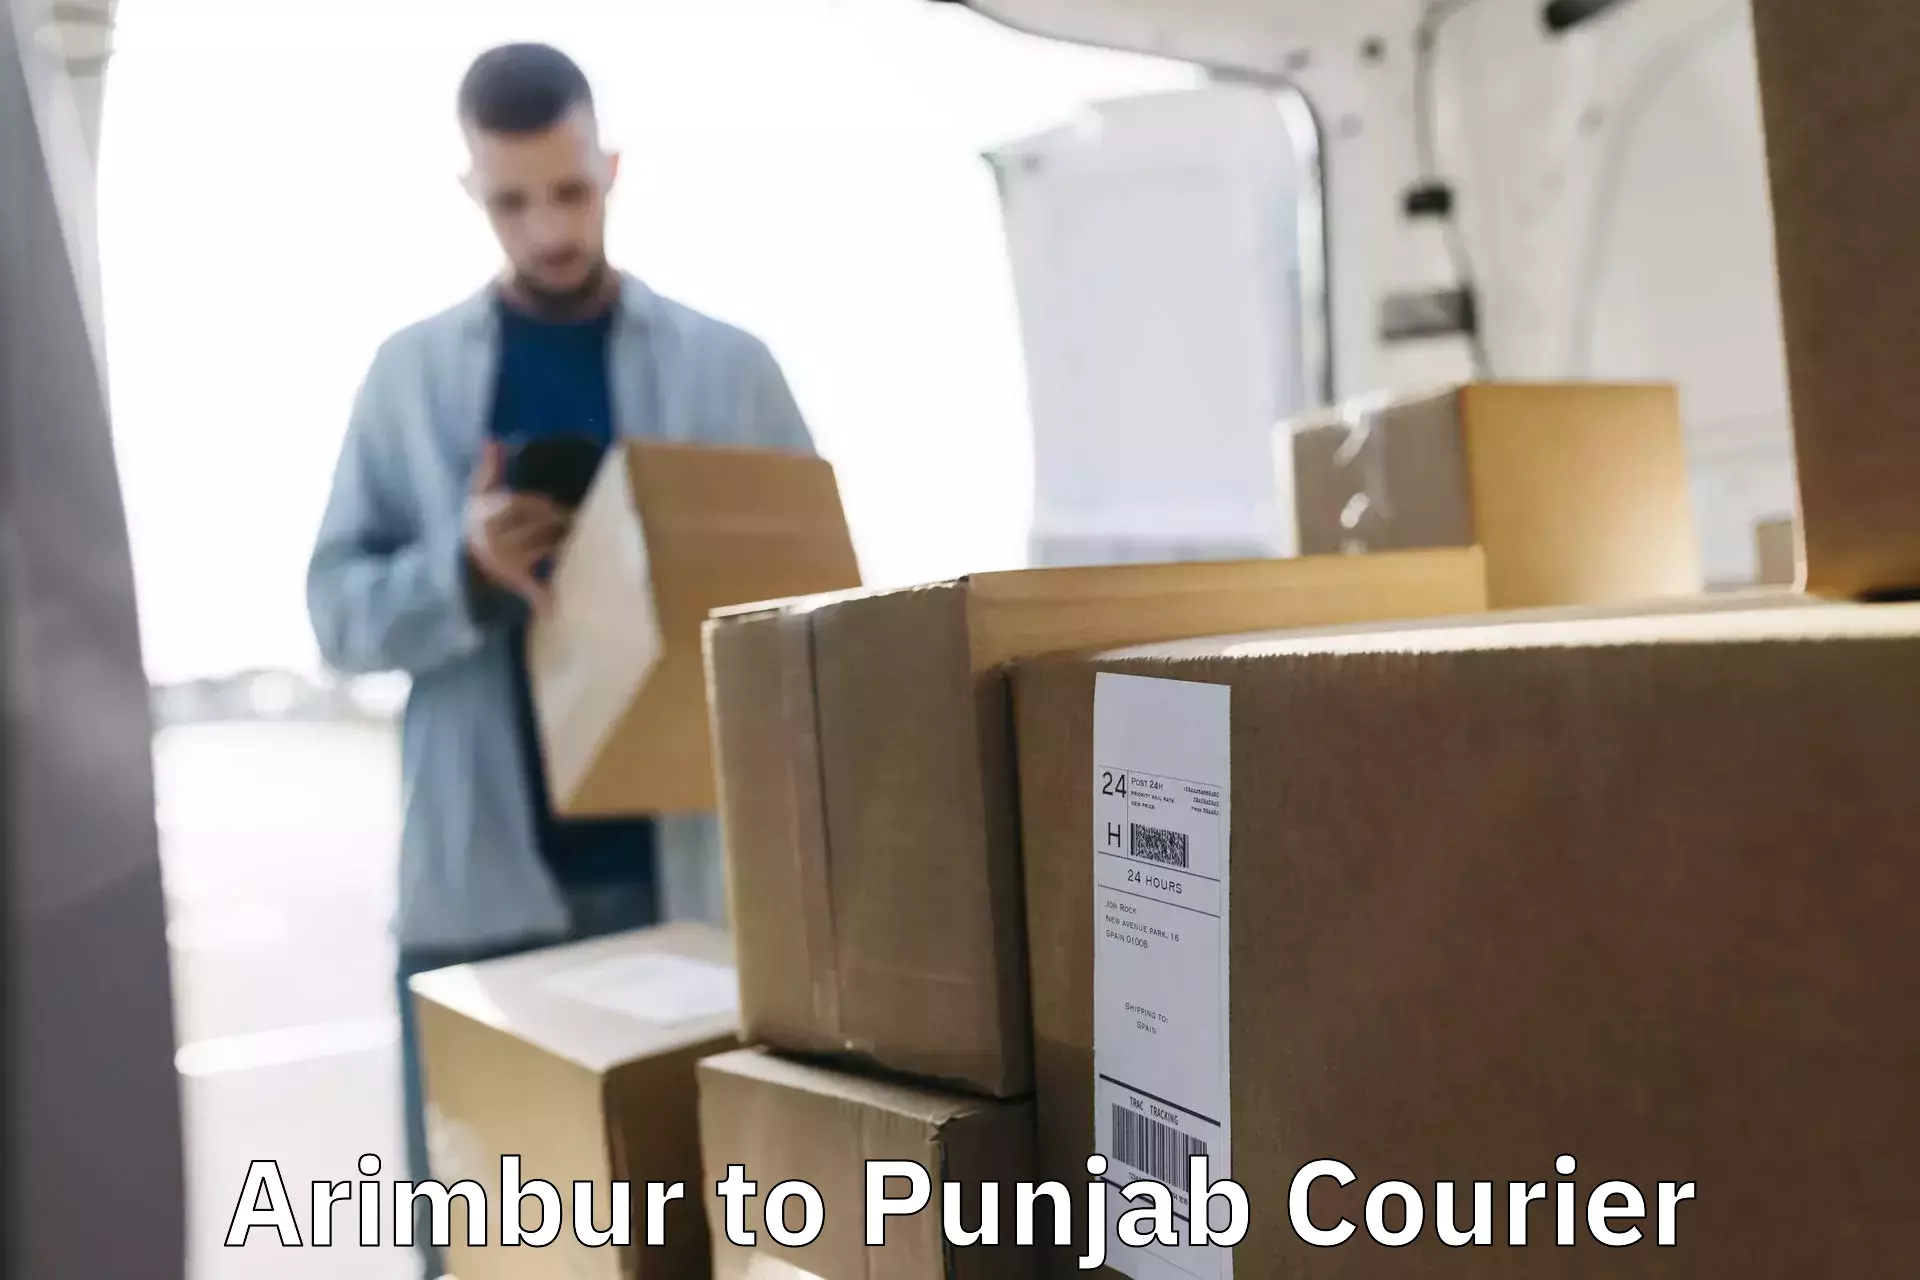 Tech-enabled shipping Arimbur to Punjab